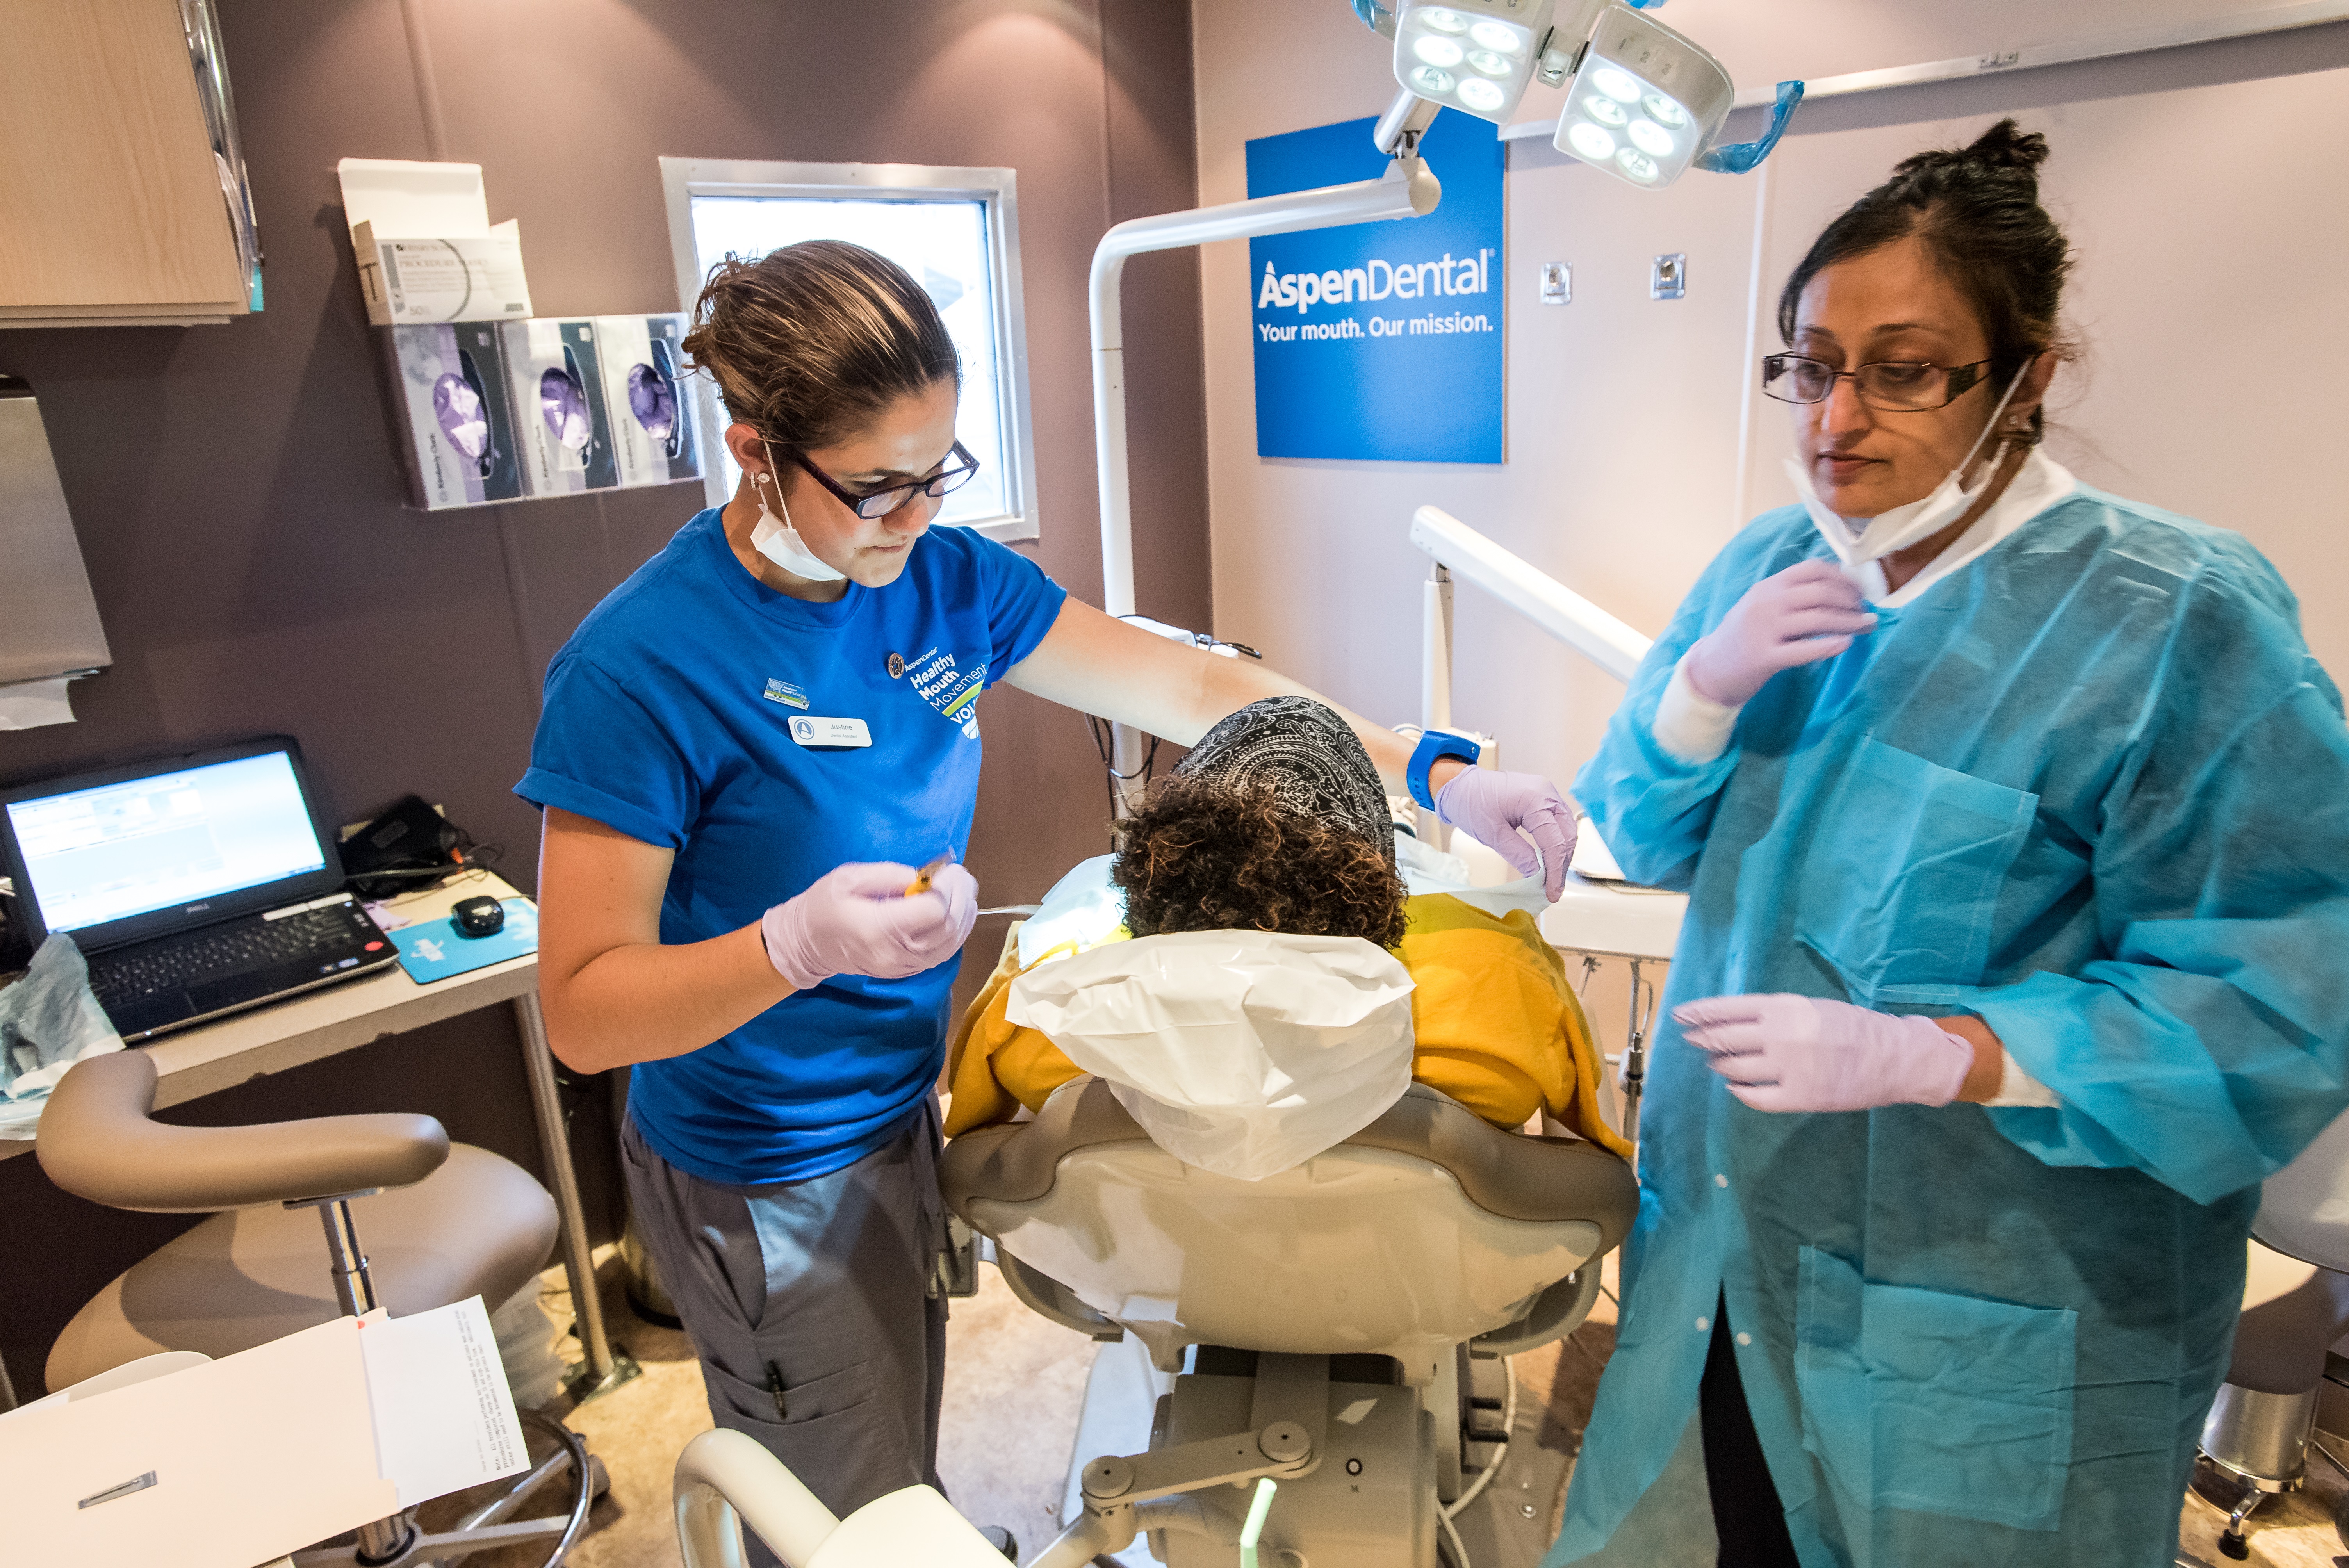 Aspen Dental offers free dental care to veterans